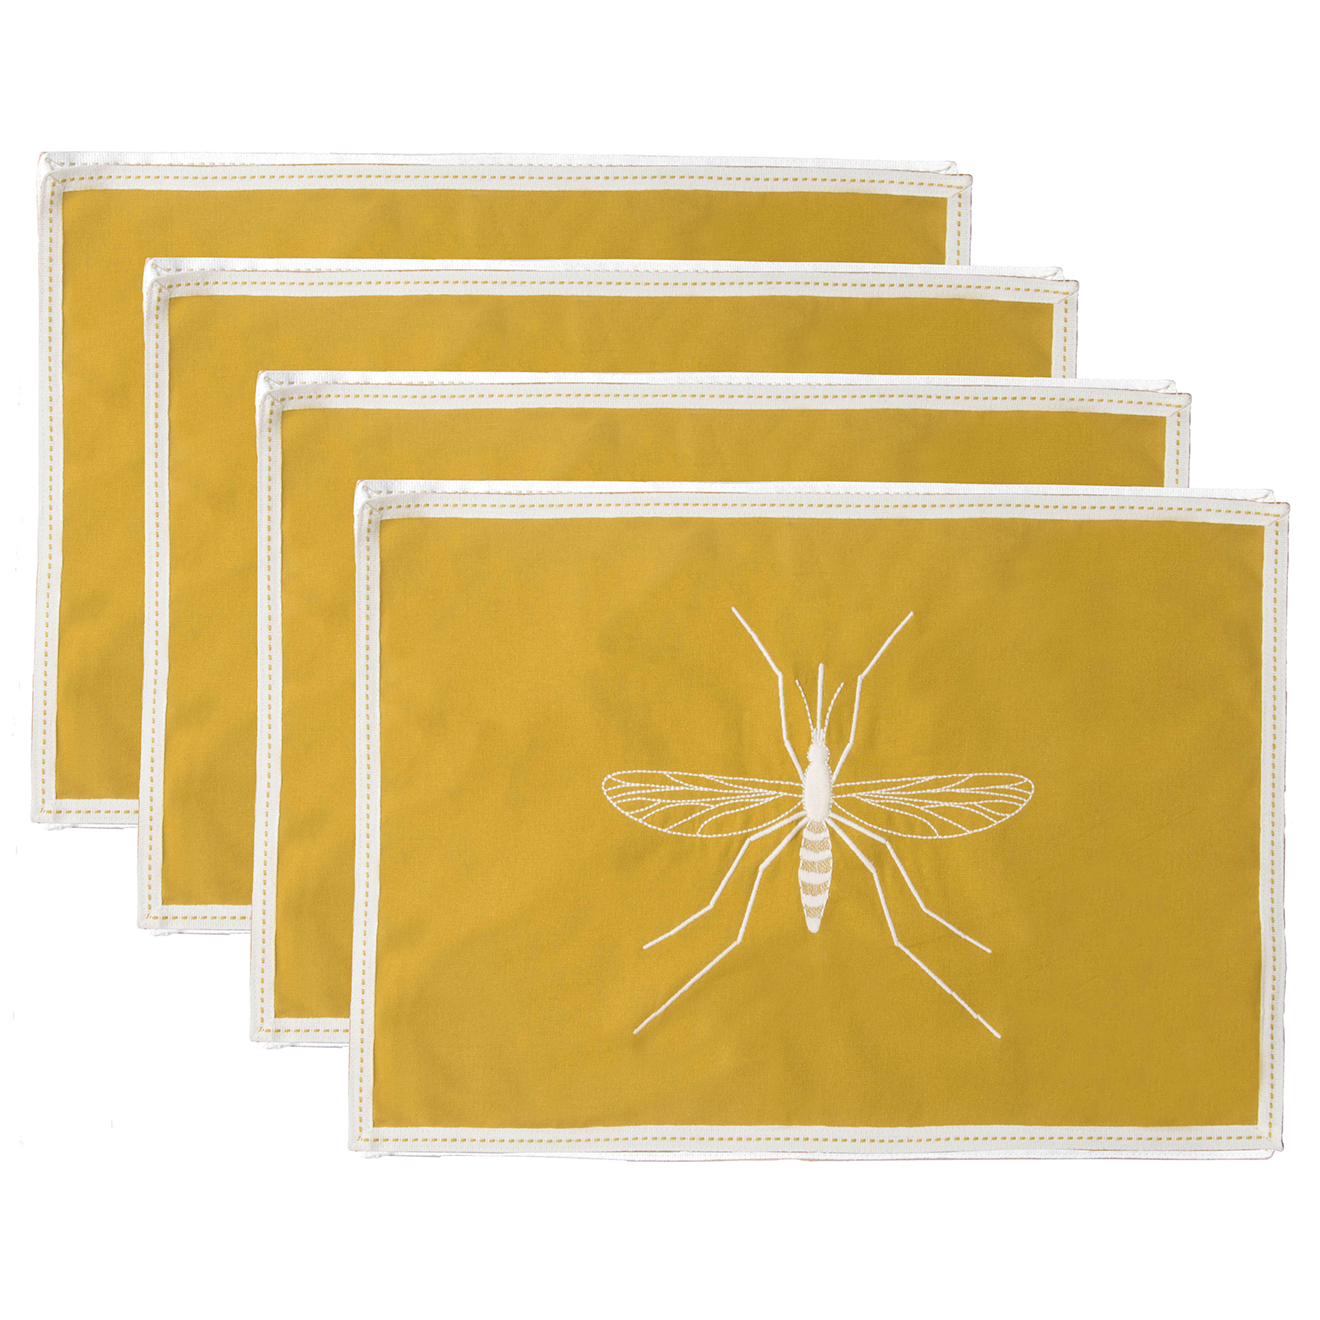 4 Sets de table en Coton Mosquito jaune zest - 50x35 cm